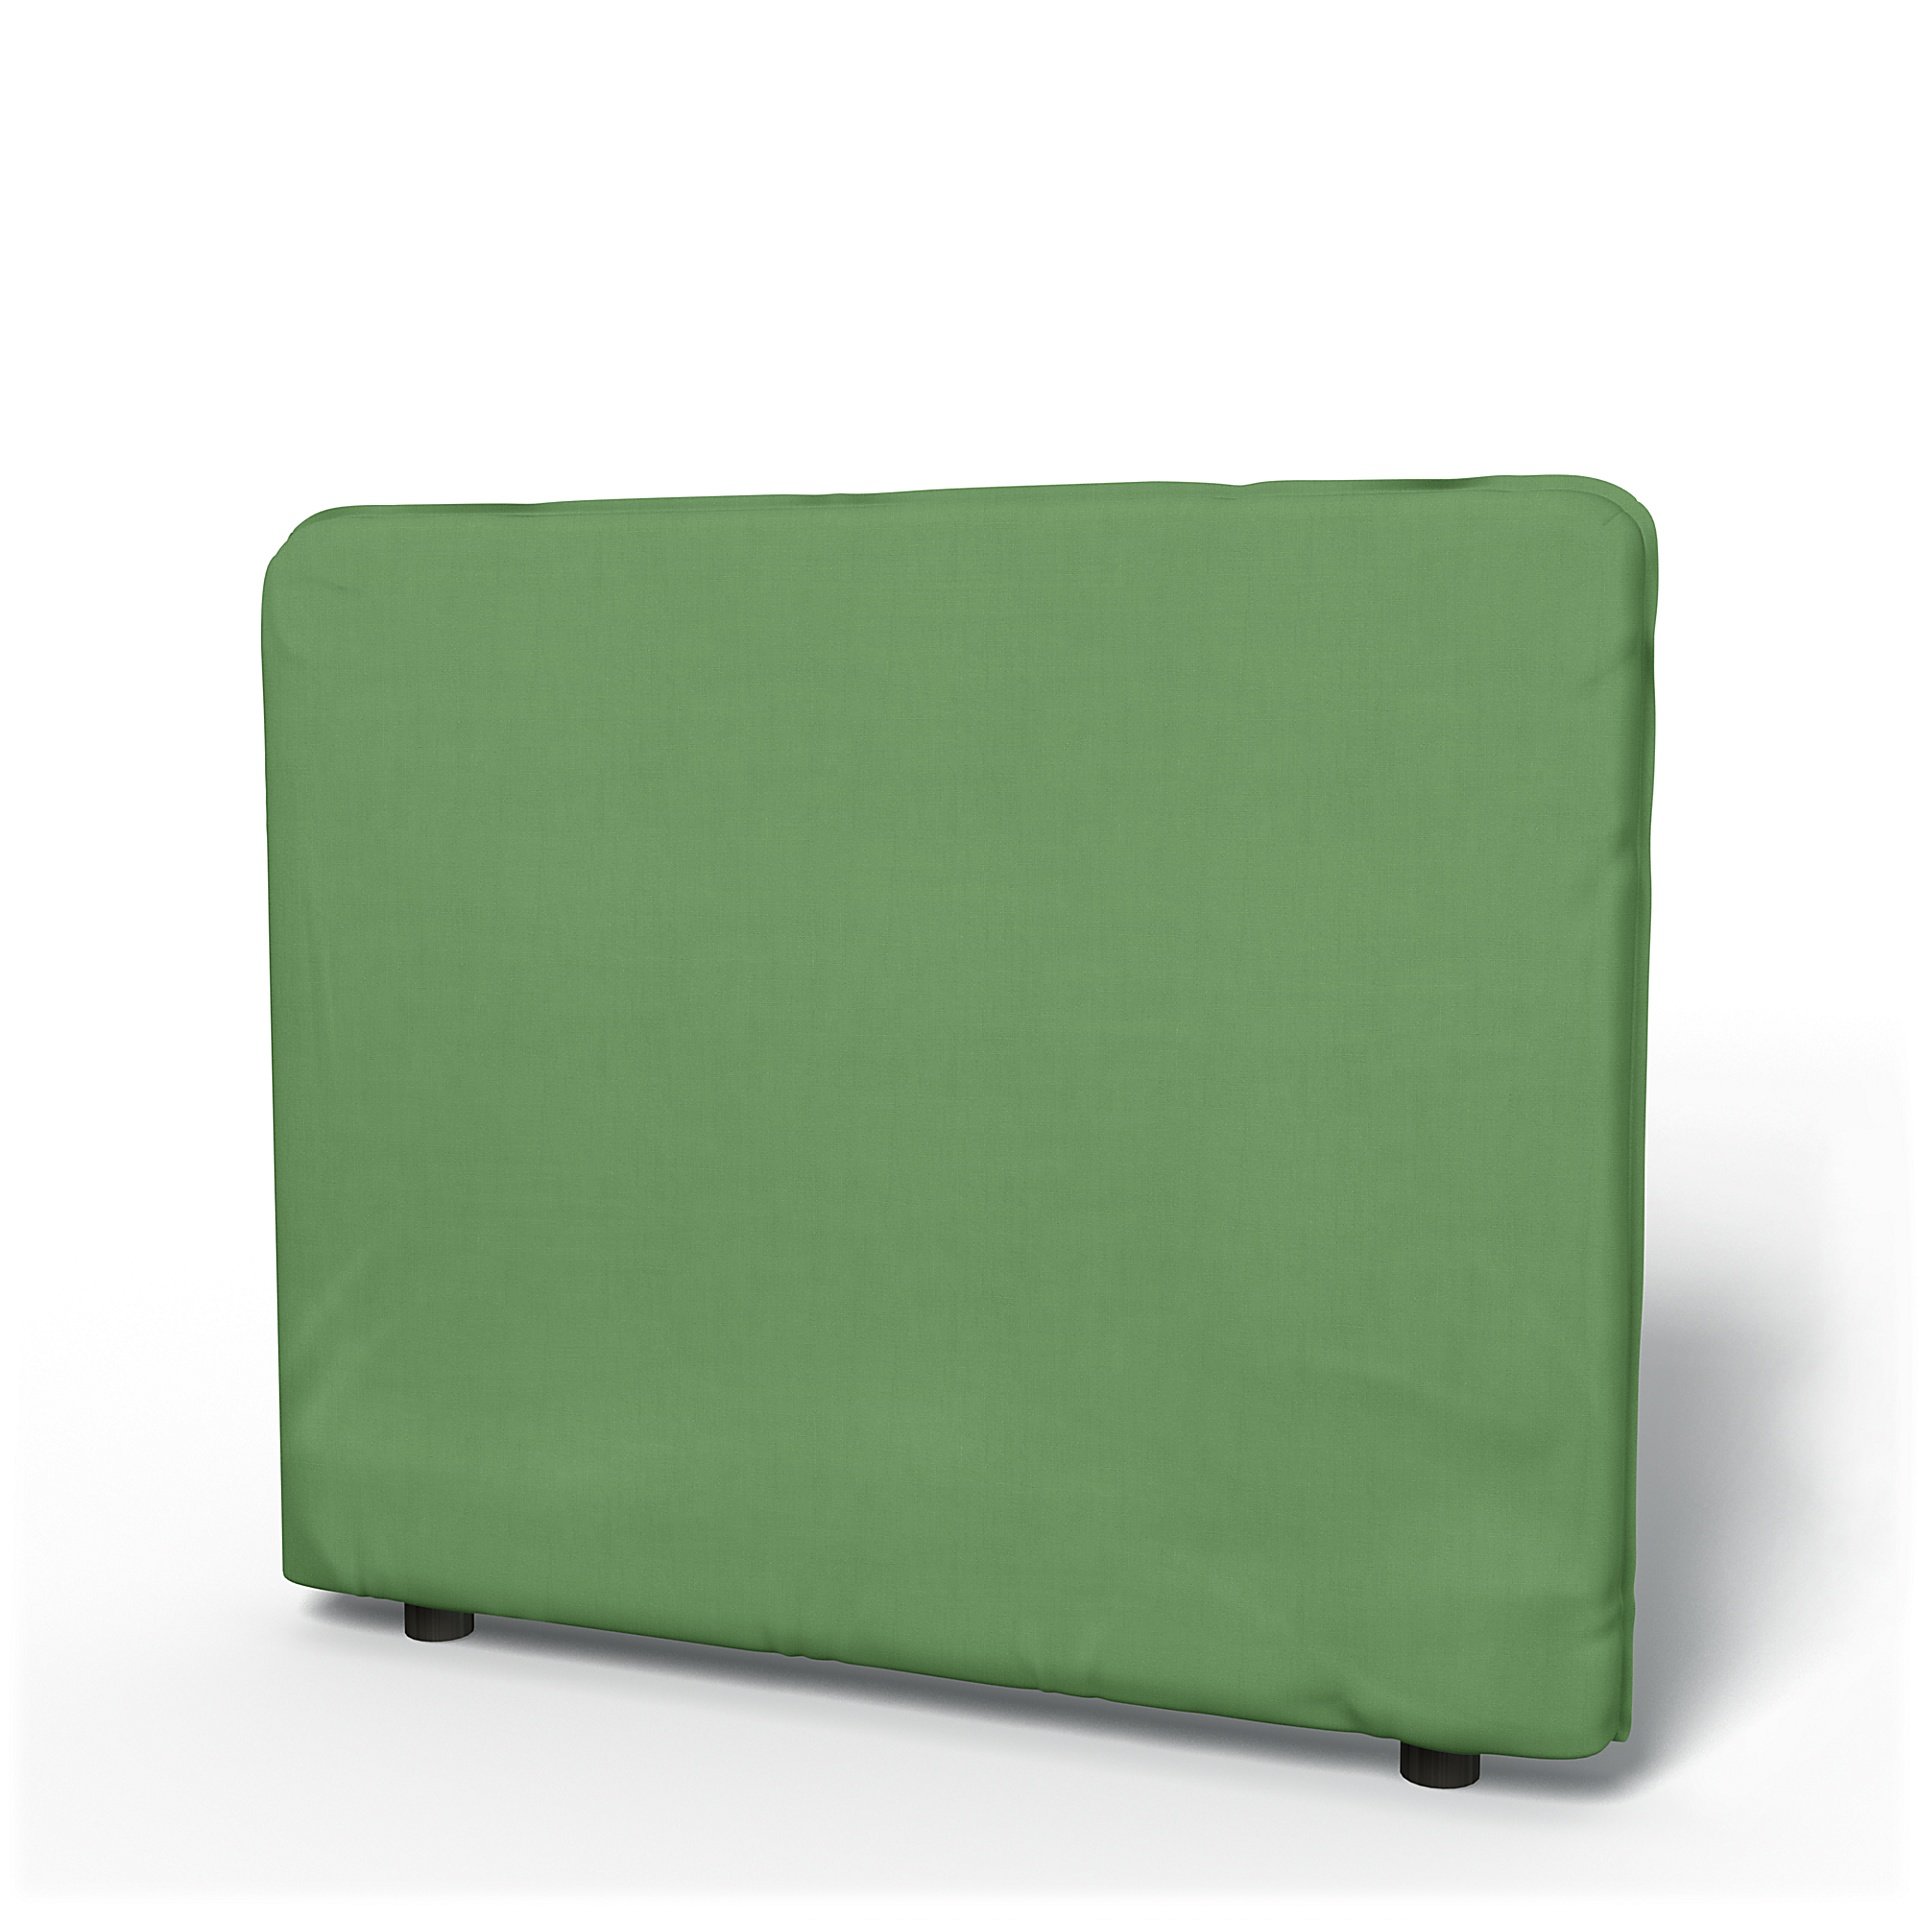 IKEA - Vallentuna Low Backrest Cover 100x80cm 39x32in, Apple Green, Linen - Bemz